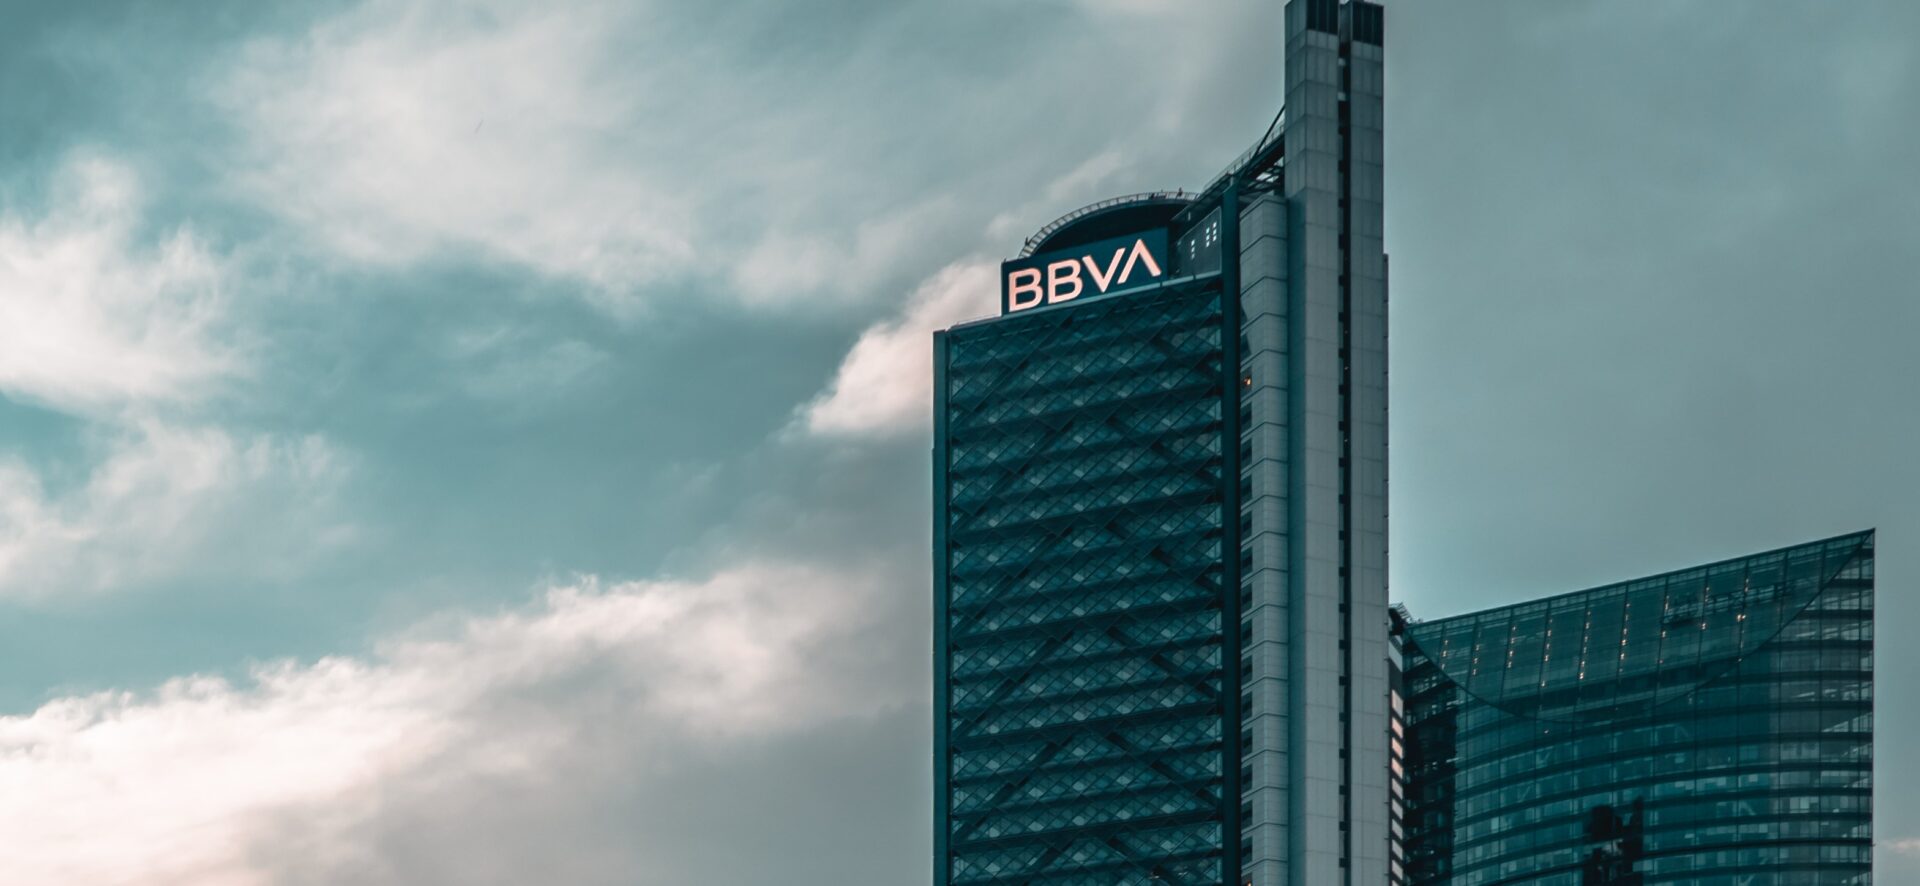 Torre BBVA Mexico